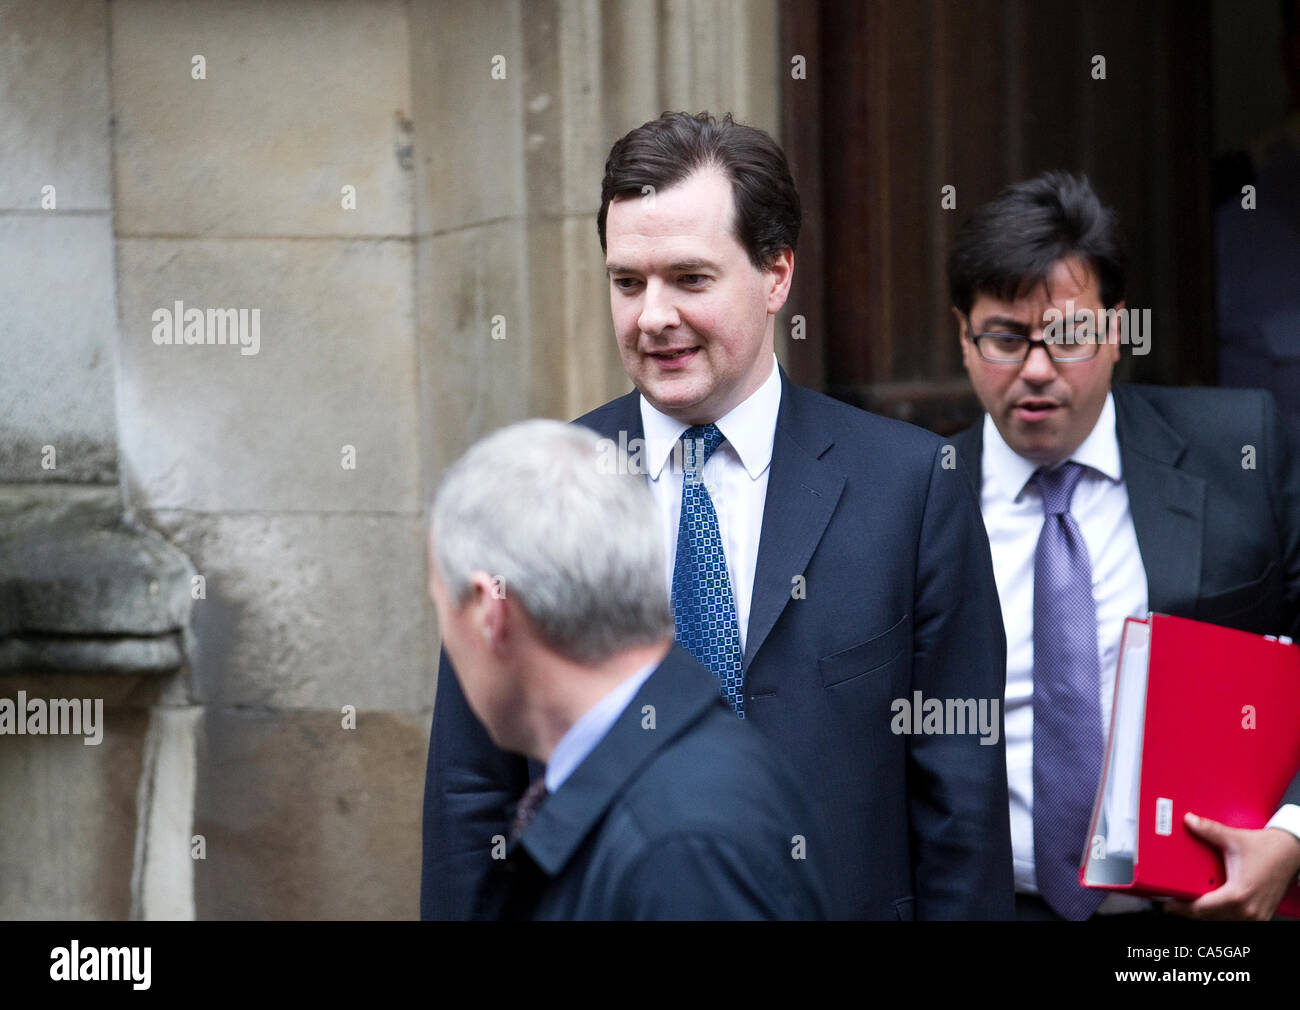 Londra, Regno Unito. 11 Giugno, 2012. George Osborne, il Cancelliere dello Scacchiere lascia il Royal Courts of Justice dopo dando evidenza all'inchiesta Leveson oggi. Foto Stock